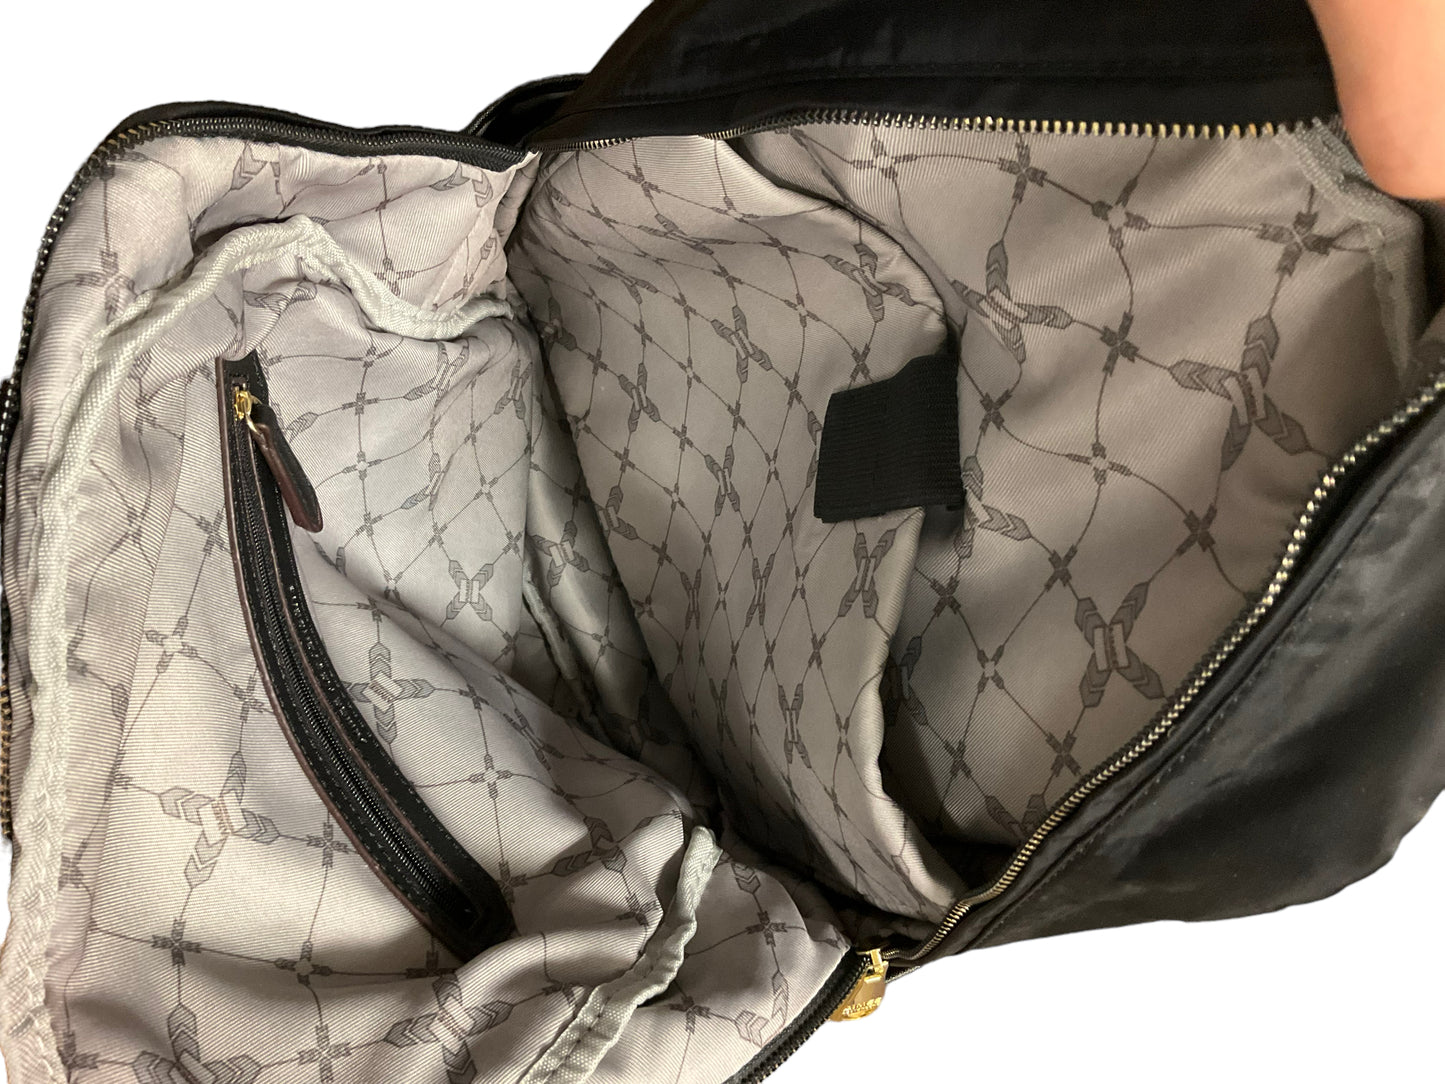 Backpack By Aimee Kestenberg  Size: Medium